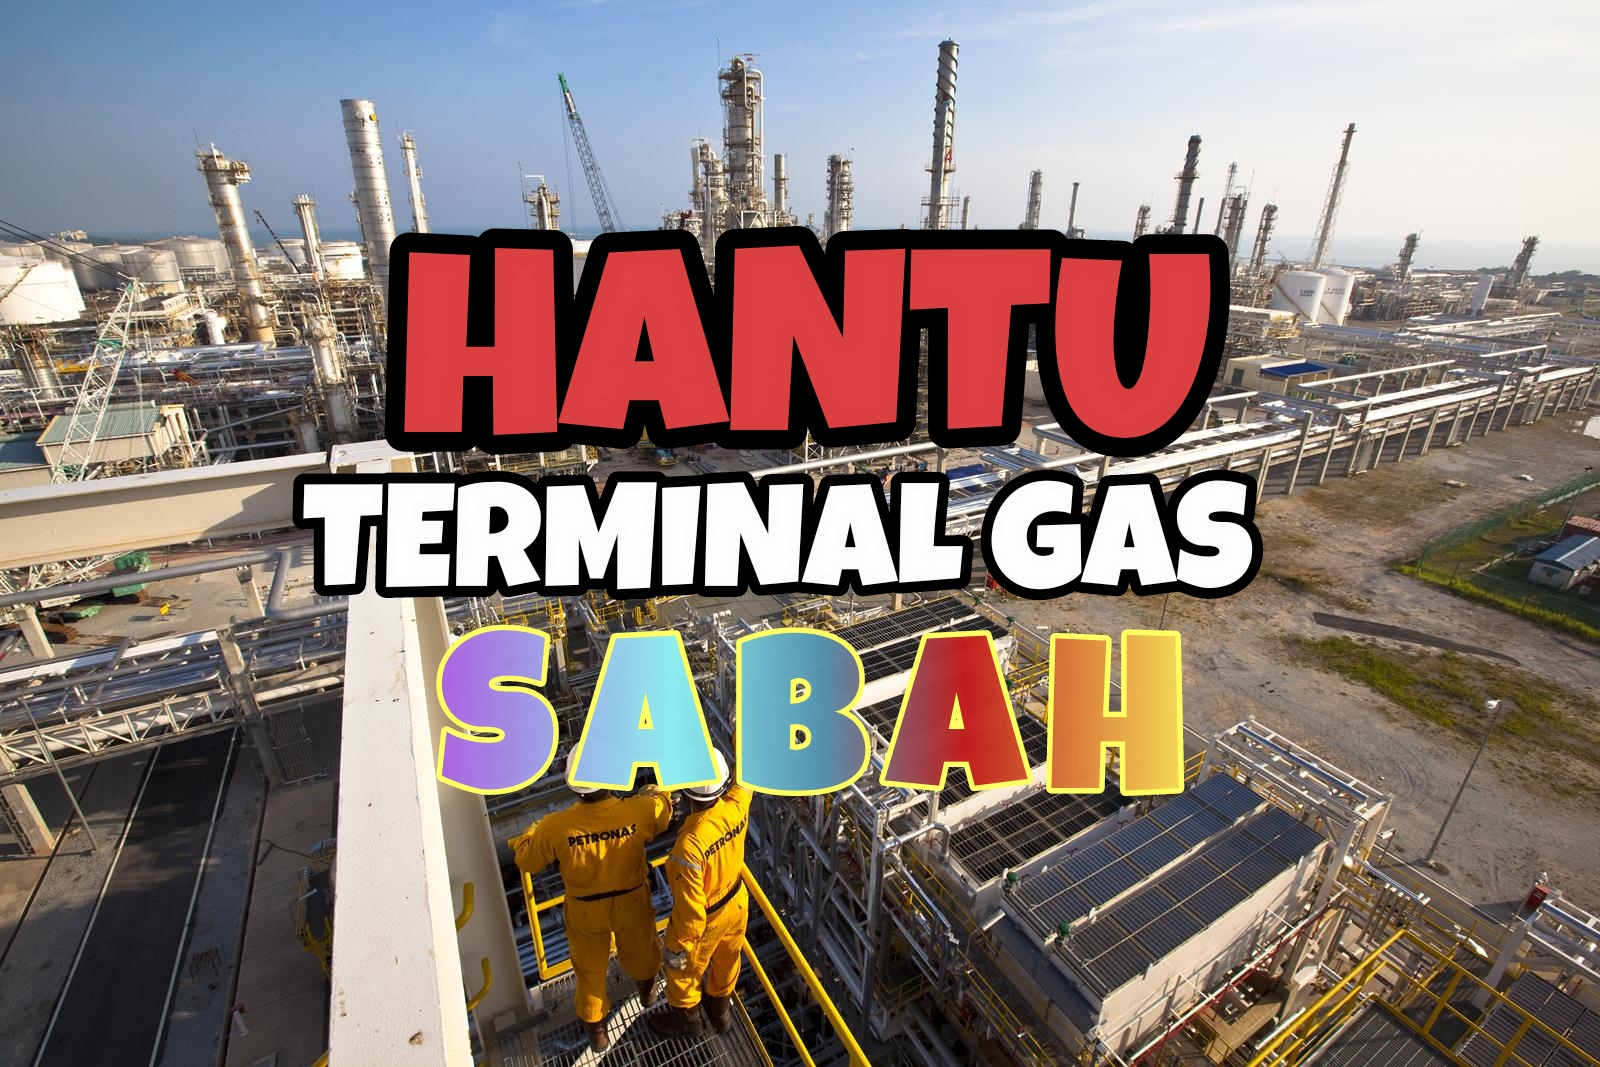 Hantu Terminal Gas di Sabah - Fiksyen Shasha